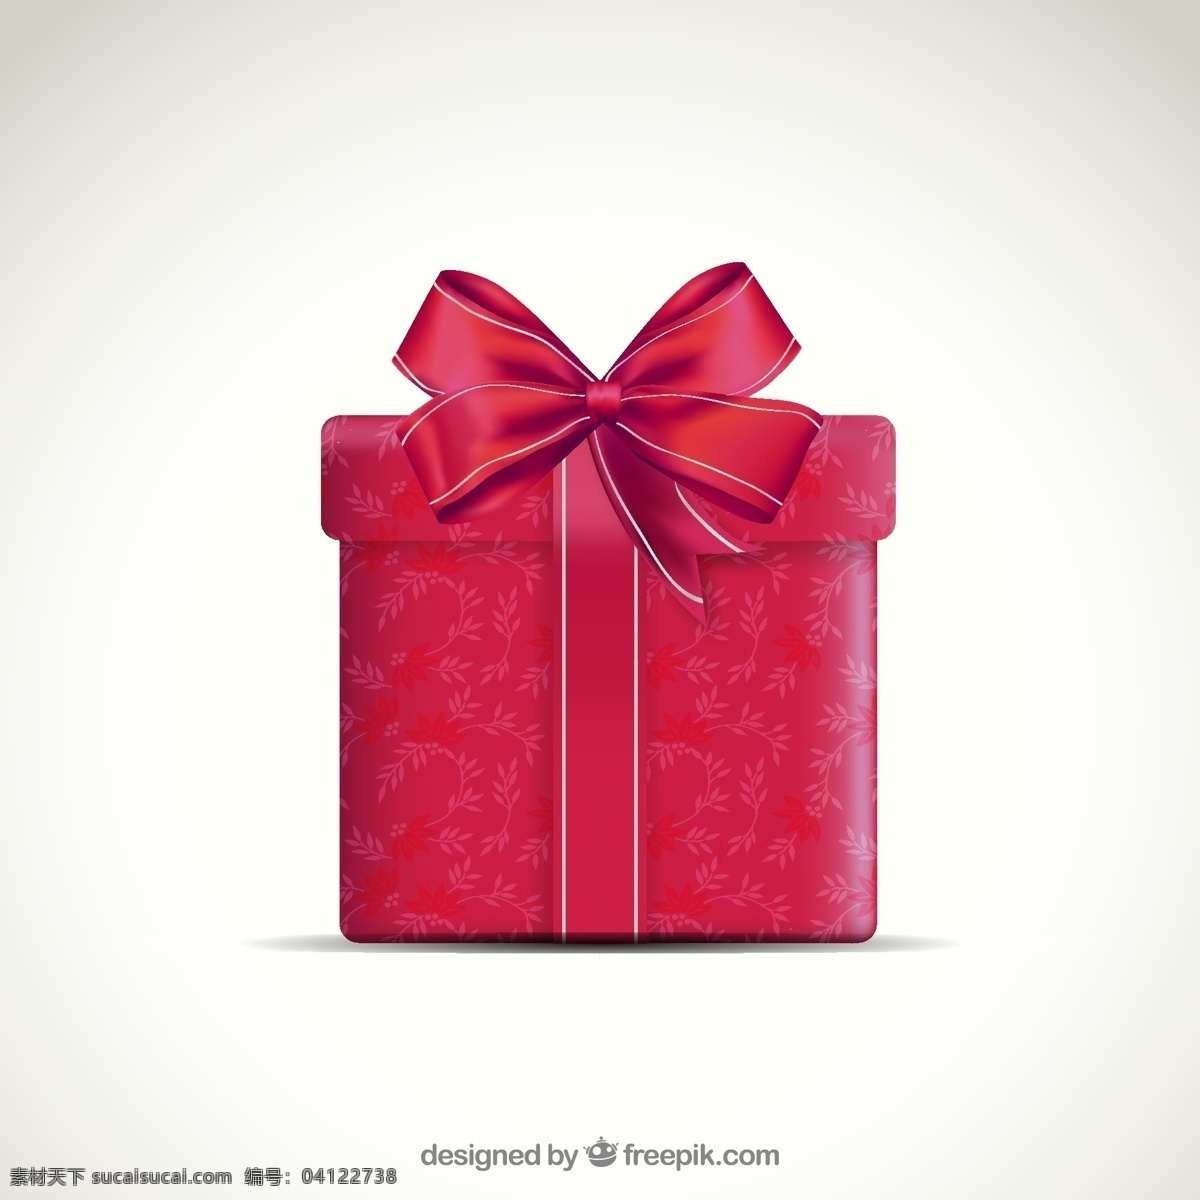 红礼品盒 丝带 爱 盒 礼品 情人节 红色 礼品盒 包装 3d 目前 拳击 红丝带 礼品带 天 3d票房 现实 节礼日 白色